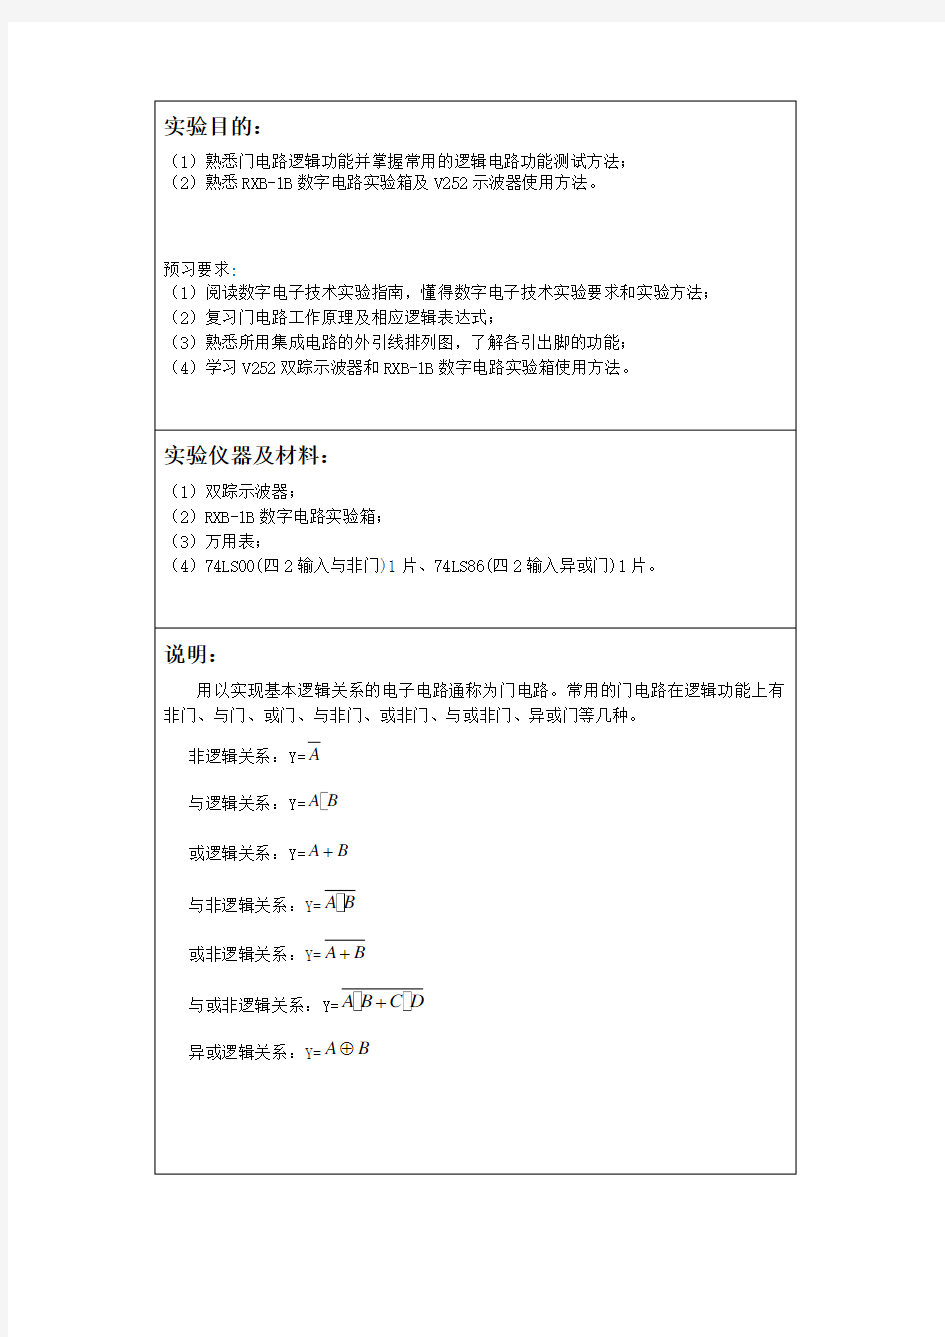 数字电路实验一_异或门_与非门实验报告_深圳大学